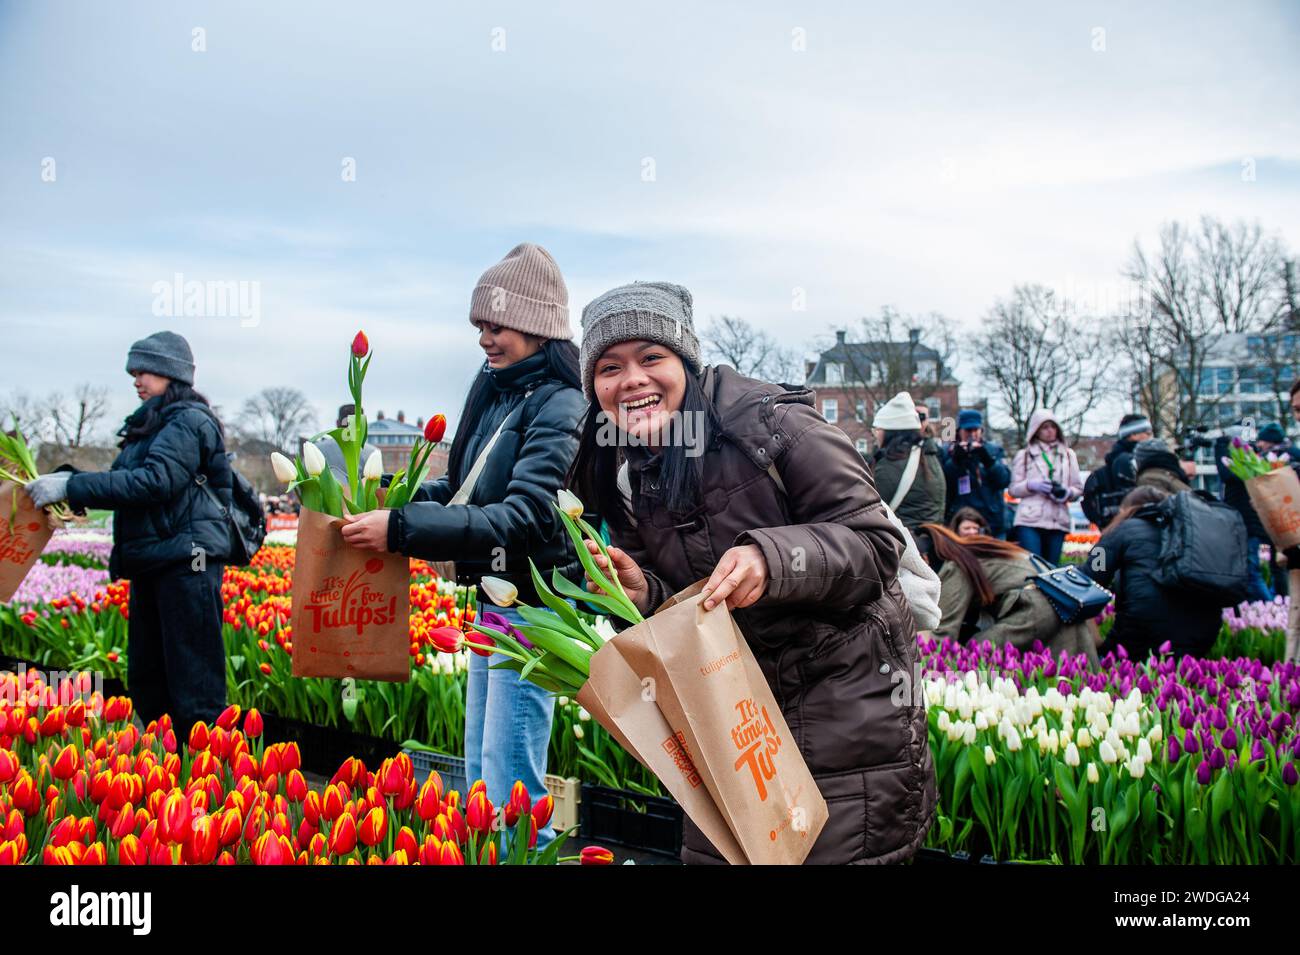 Eine Frau posiert glücklich mit ihren Tulpen. Jedes Jahr am 3. Samstag im Januar wird in Amsterdam der nationale Tulpentag gefeiert. Holländische Tulpenzüchter bauten am Museumplein einen riesigen Pflückgarten mit mehr als 200.000 bunten Tulpen. Besucher dürfen Tulpen kostenlos pflücken. Da dieses Jahr das Thema „Let's Dance“ lautet, war der internationale niederländische DJ/Produzent „Hardwell“ der besondere Gast, um diese Veranstaltung zu eröffnen. Stockfoto